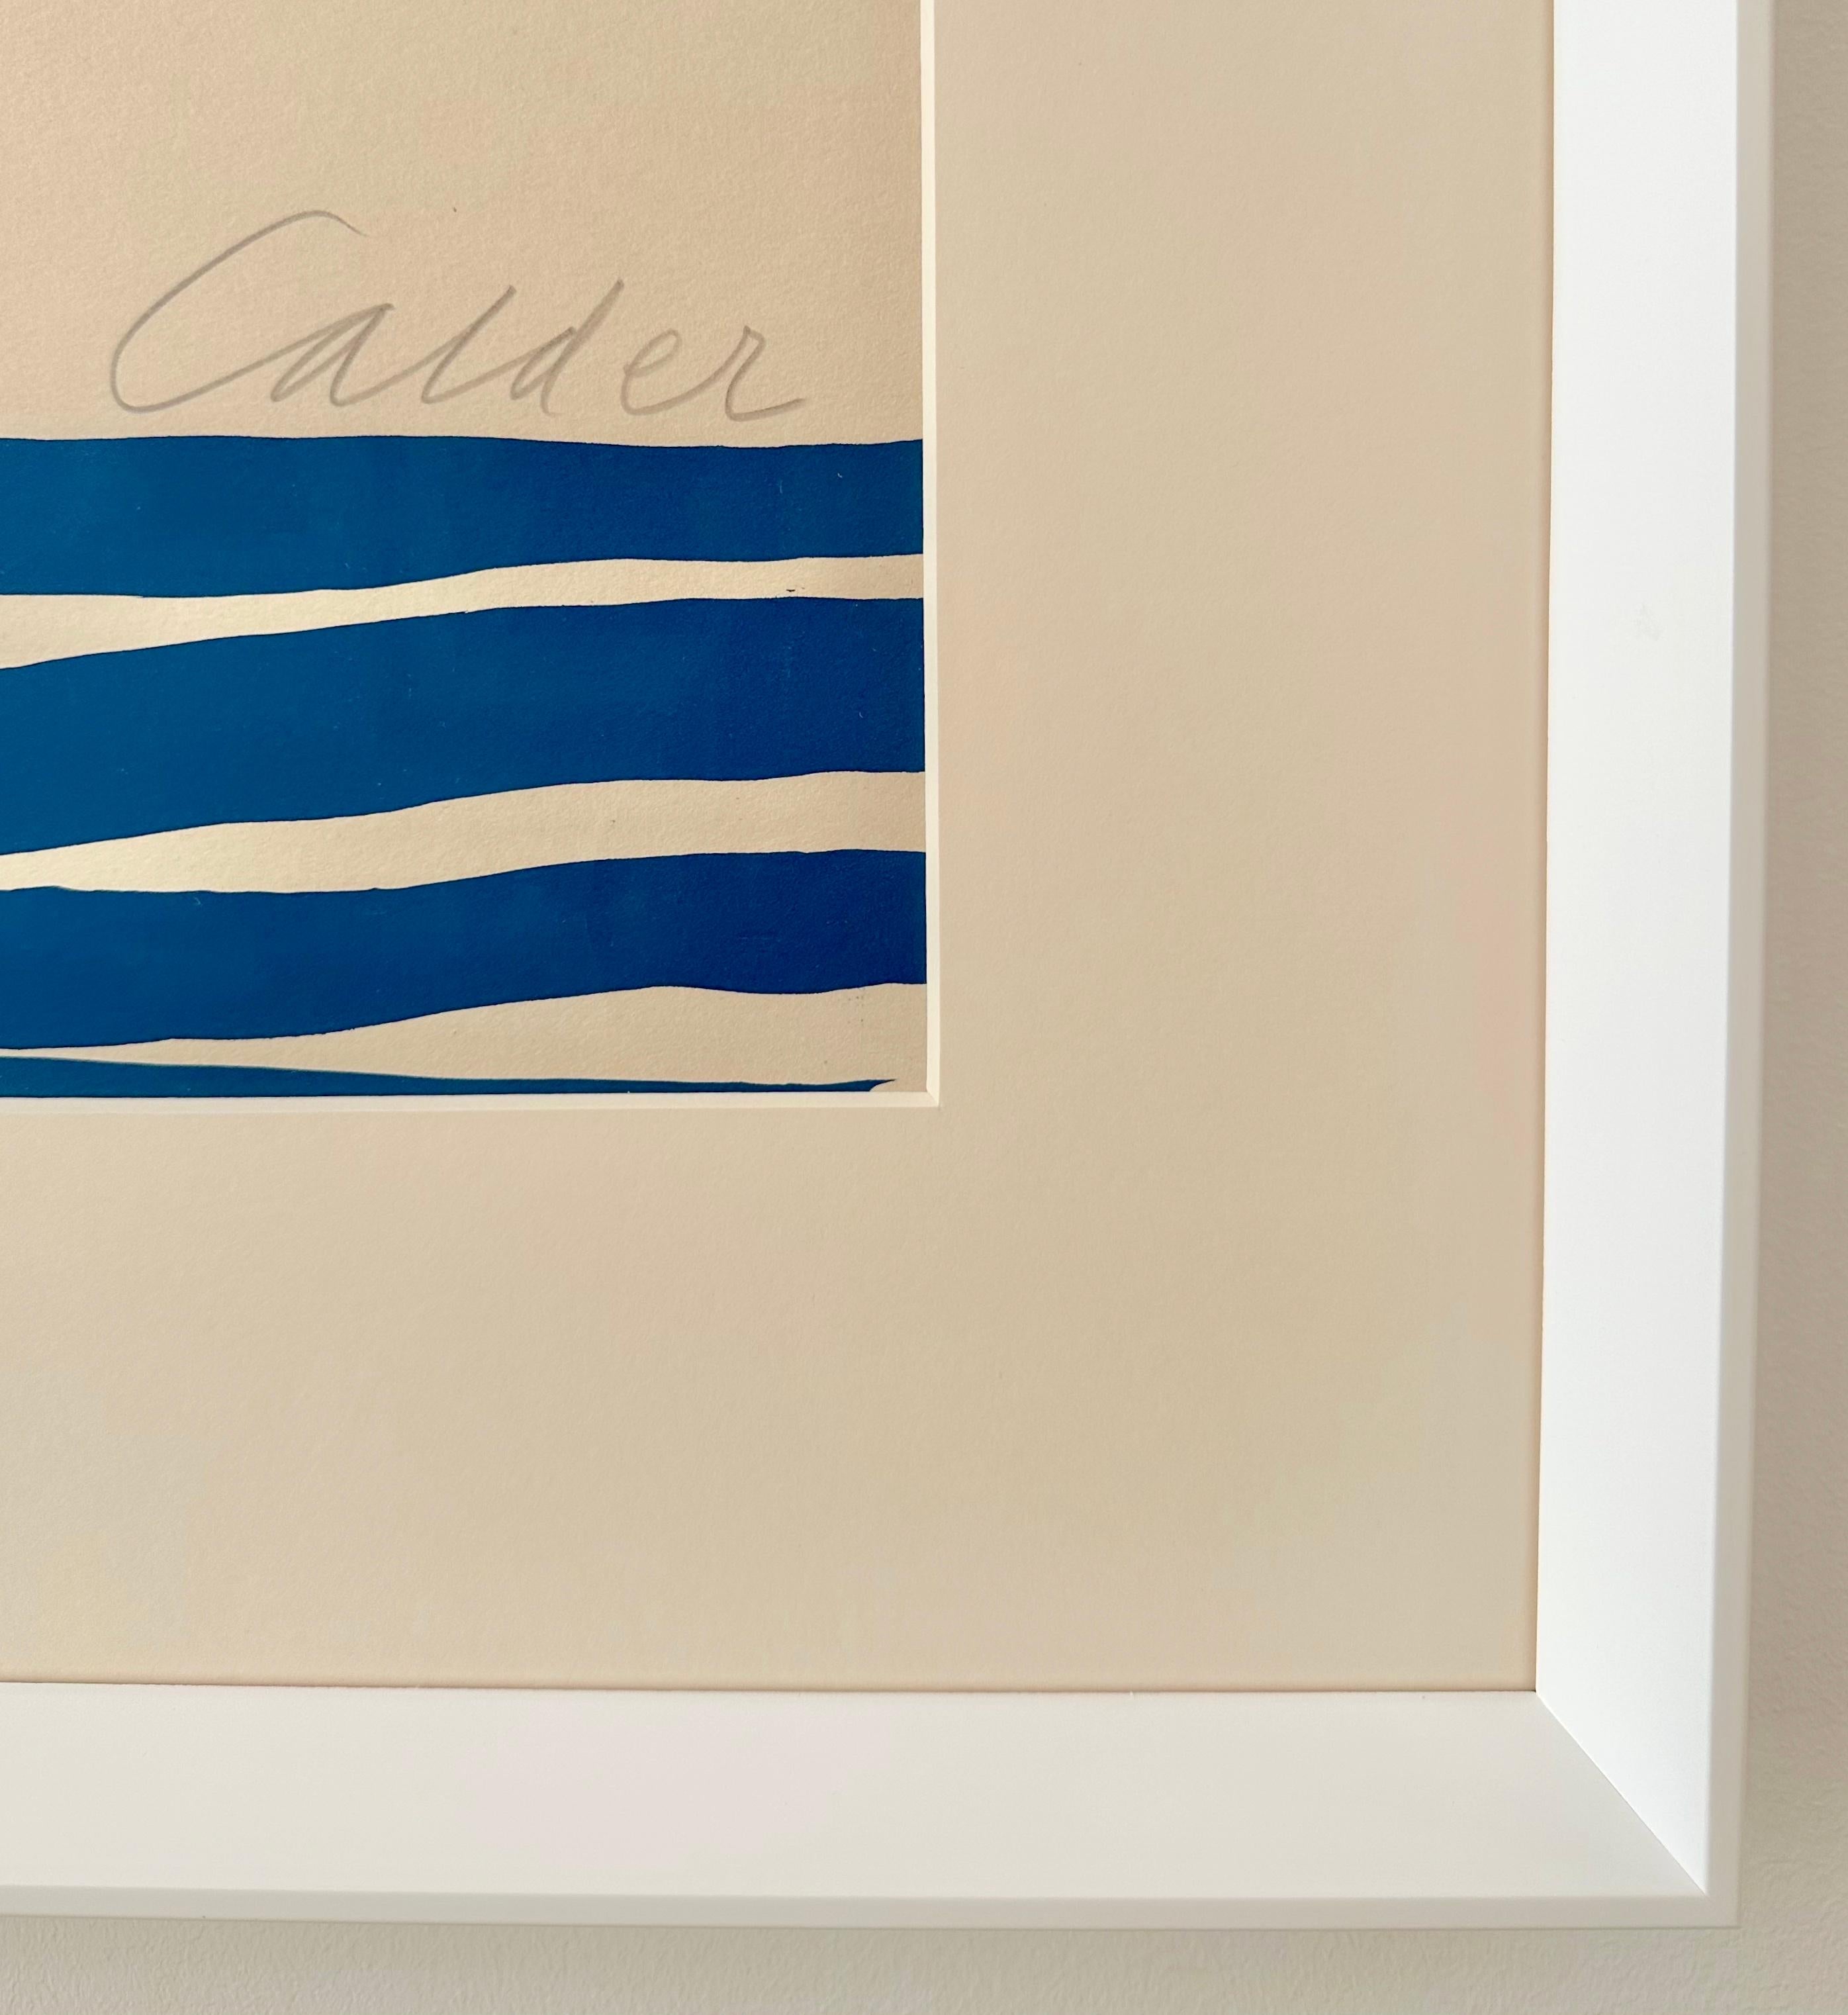 Alexander Calder- Paysage marin
Lithographie en couleurs sur papier Arches crème, 1974
Edition de 150
Signé au crayon, en bas à droite
Numéroté (105/ 150) au crayon, en bas à gauche
Avec cachet en bas à gauche
Format de la feuille : 100,5 × 71,0 cm,